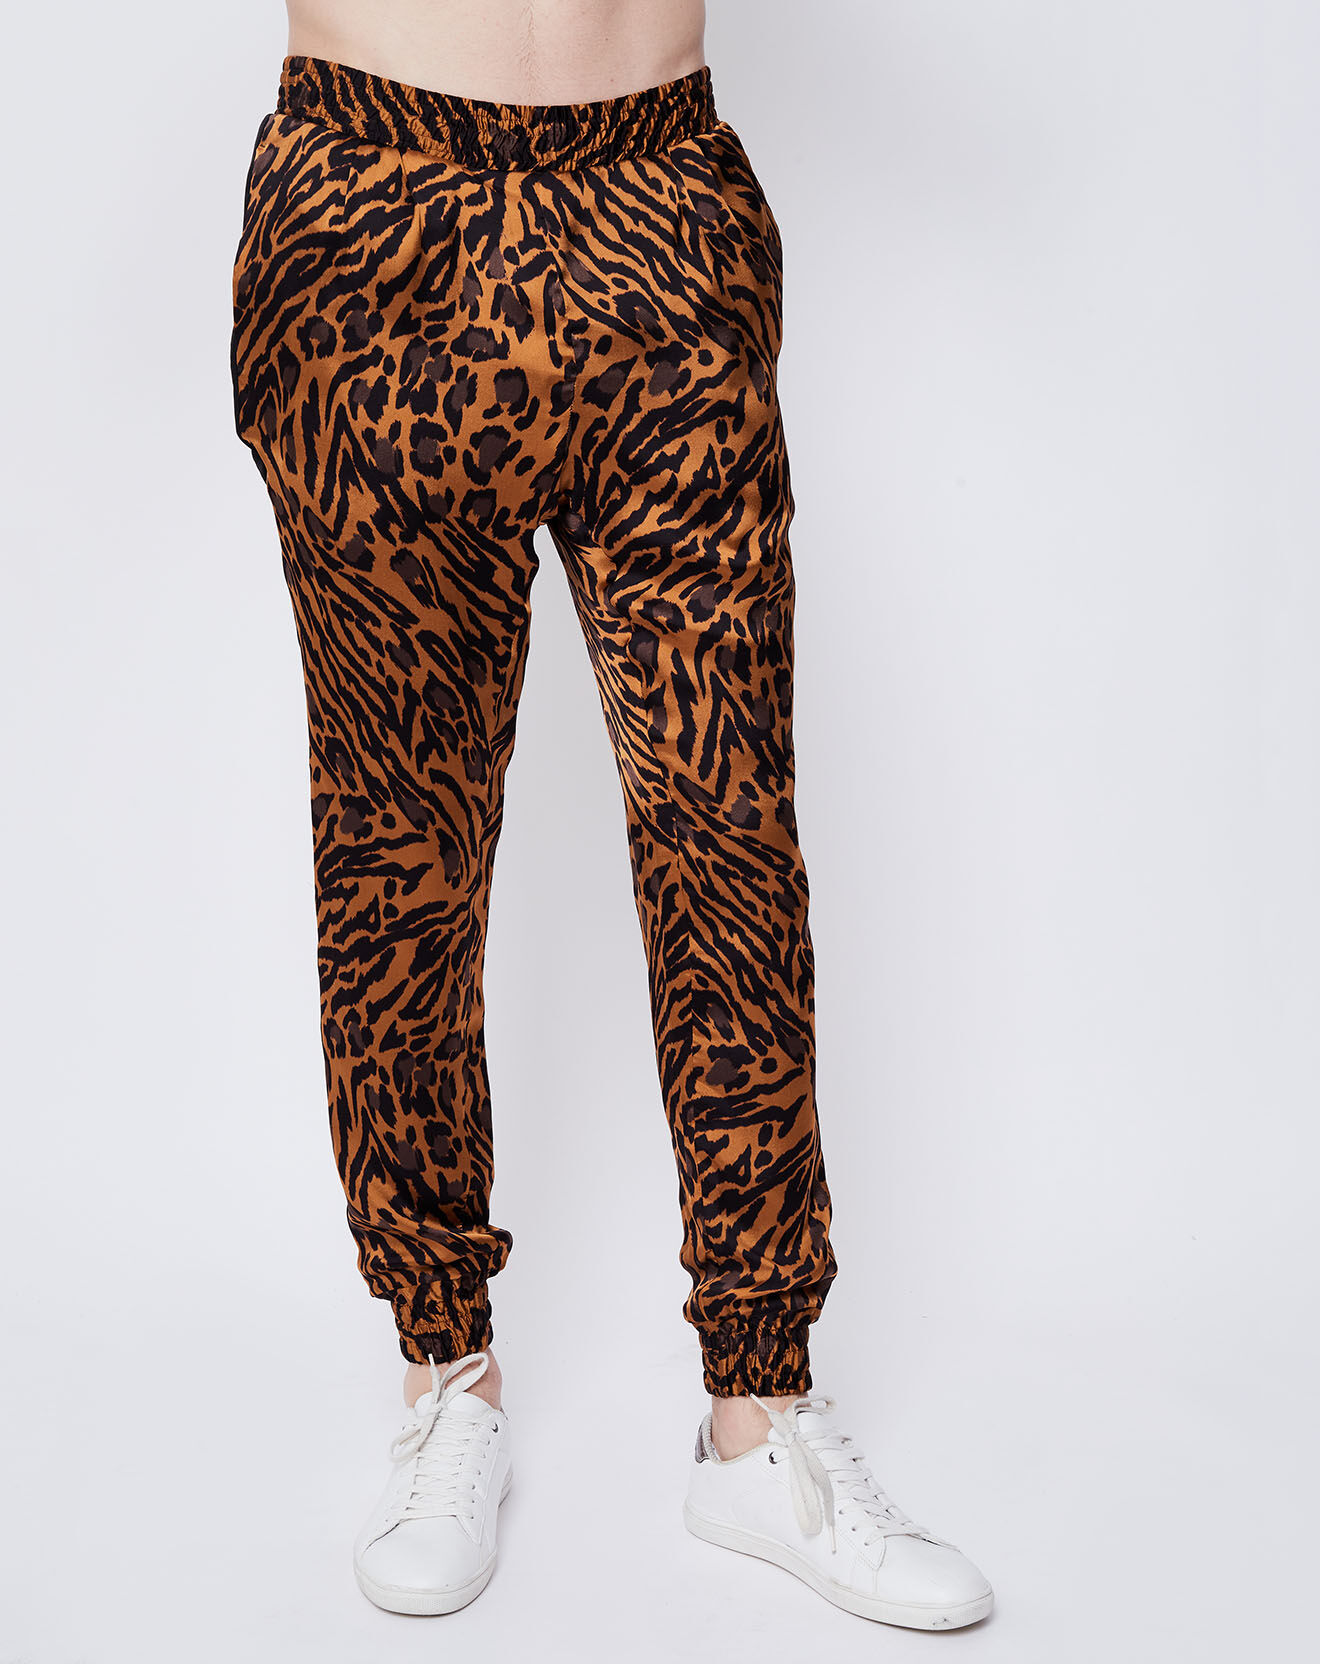 Pantalon 100% Soie imprimé léopard marron